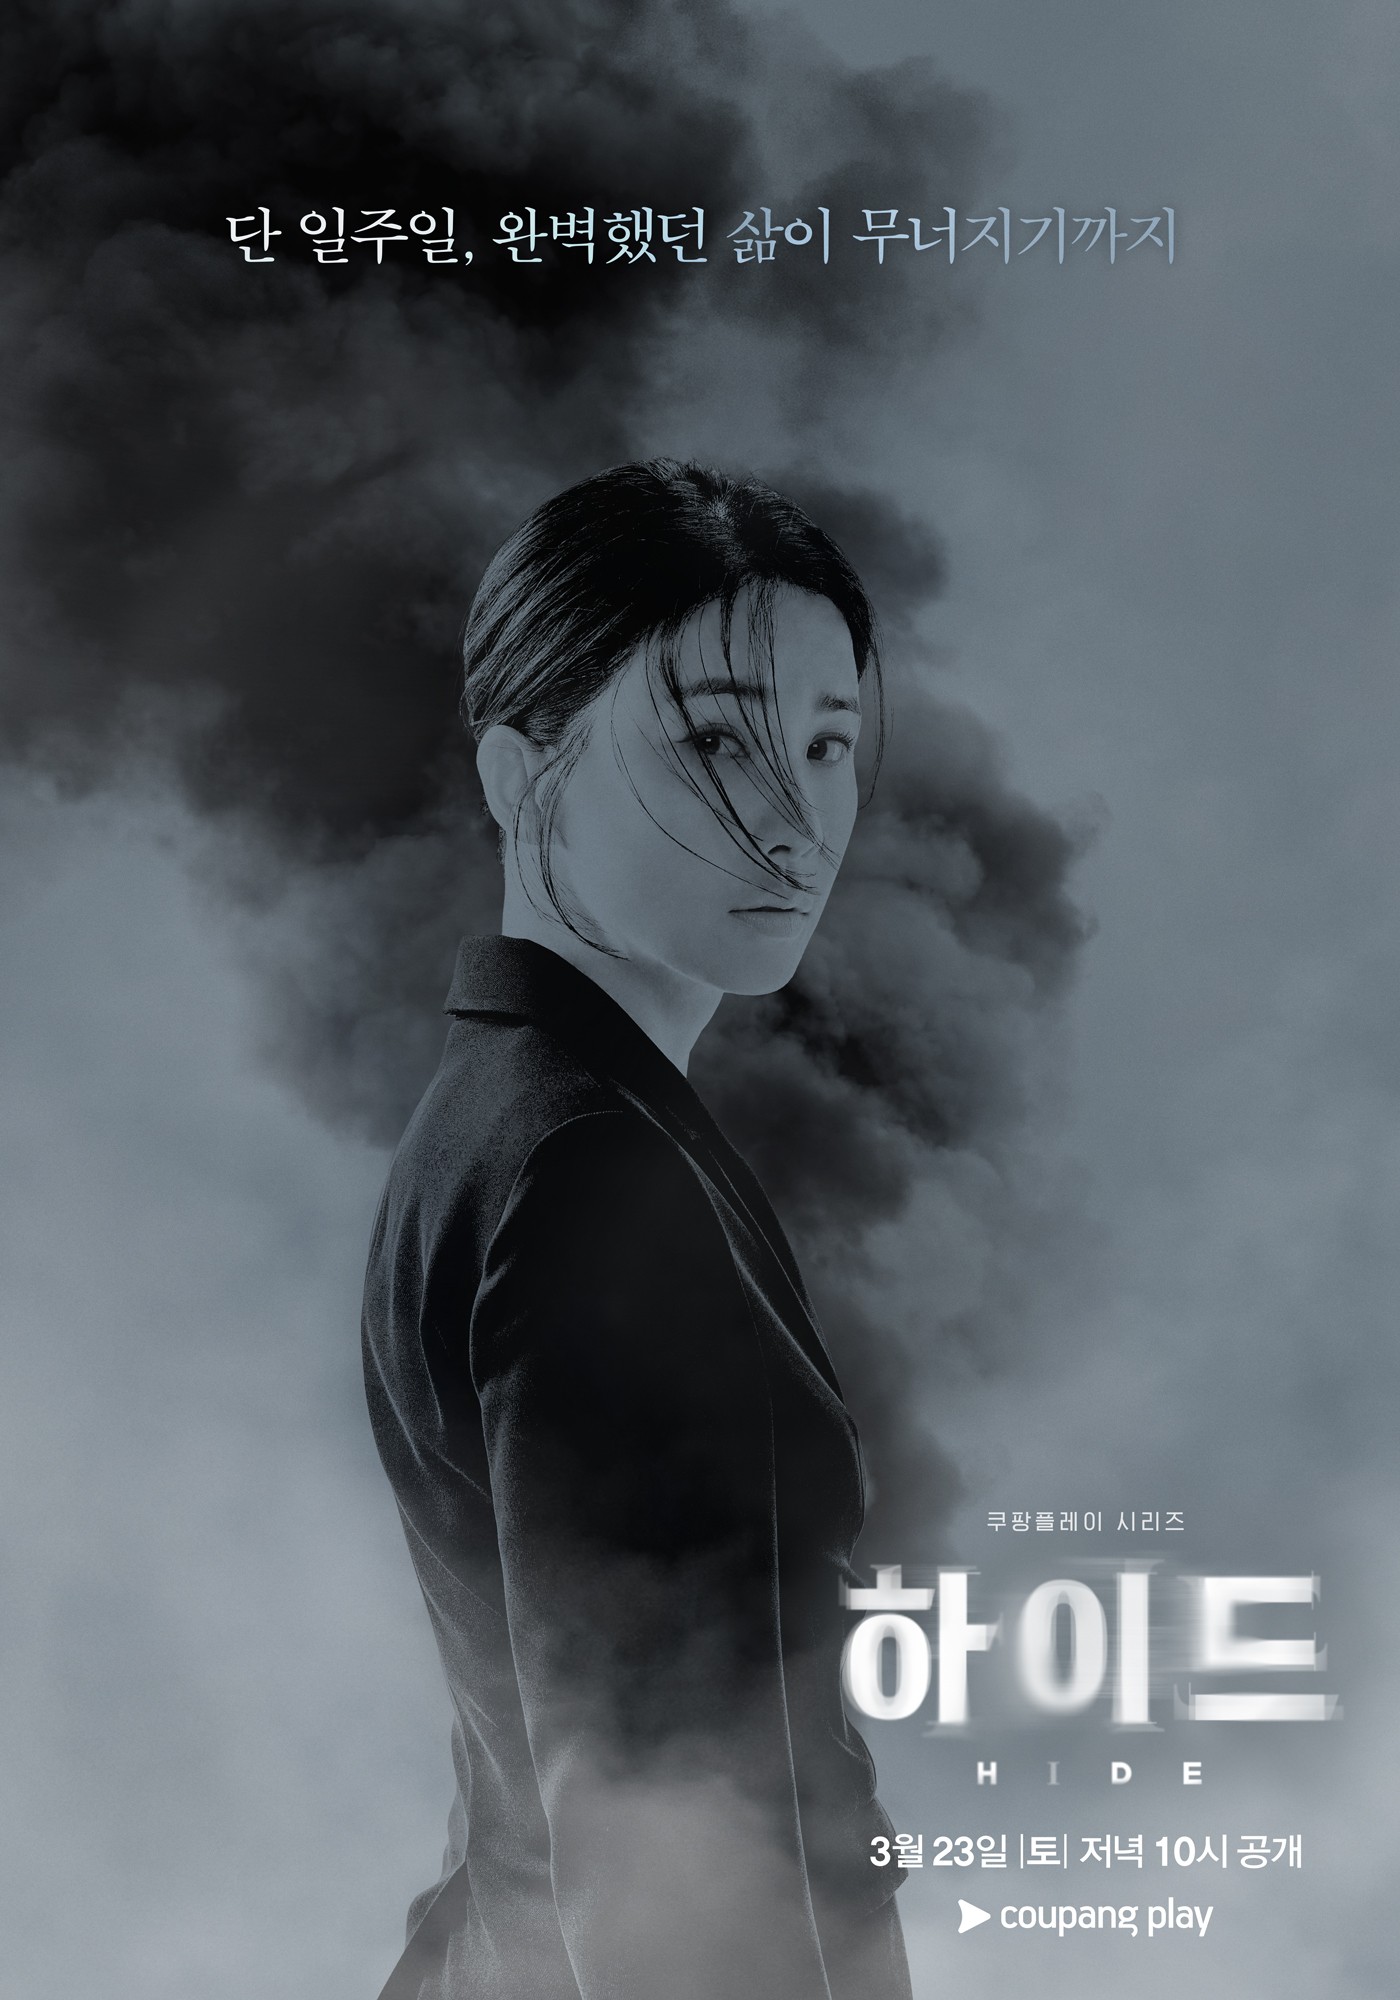 Hide (korean drama)